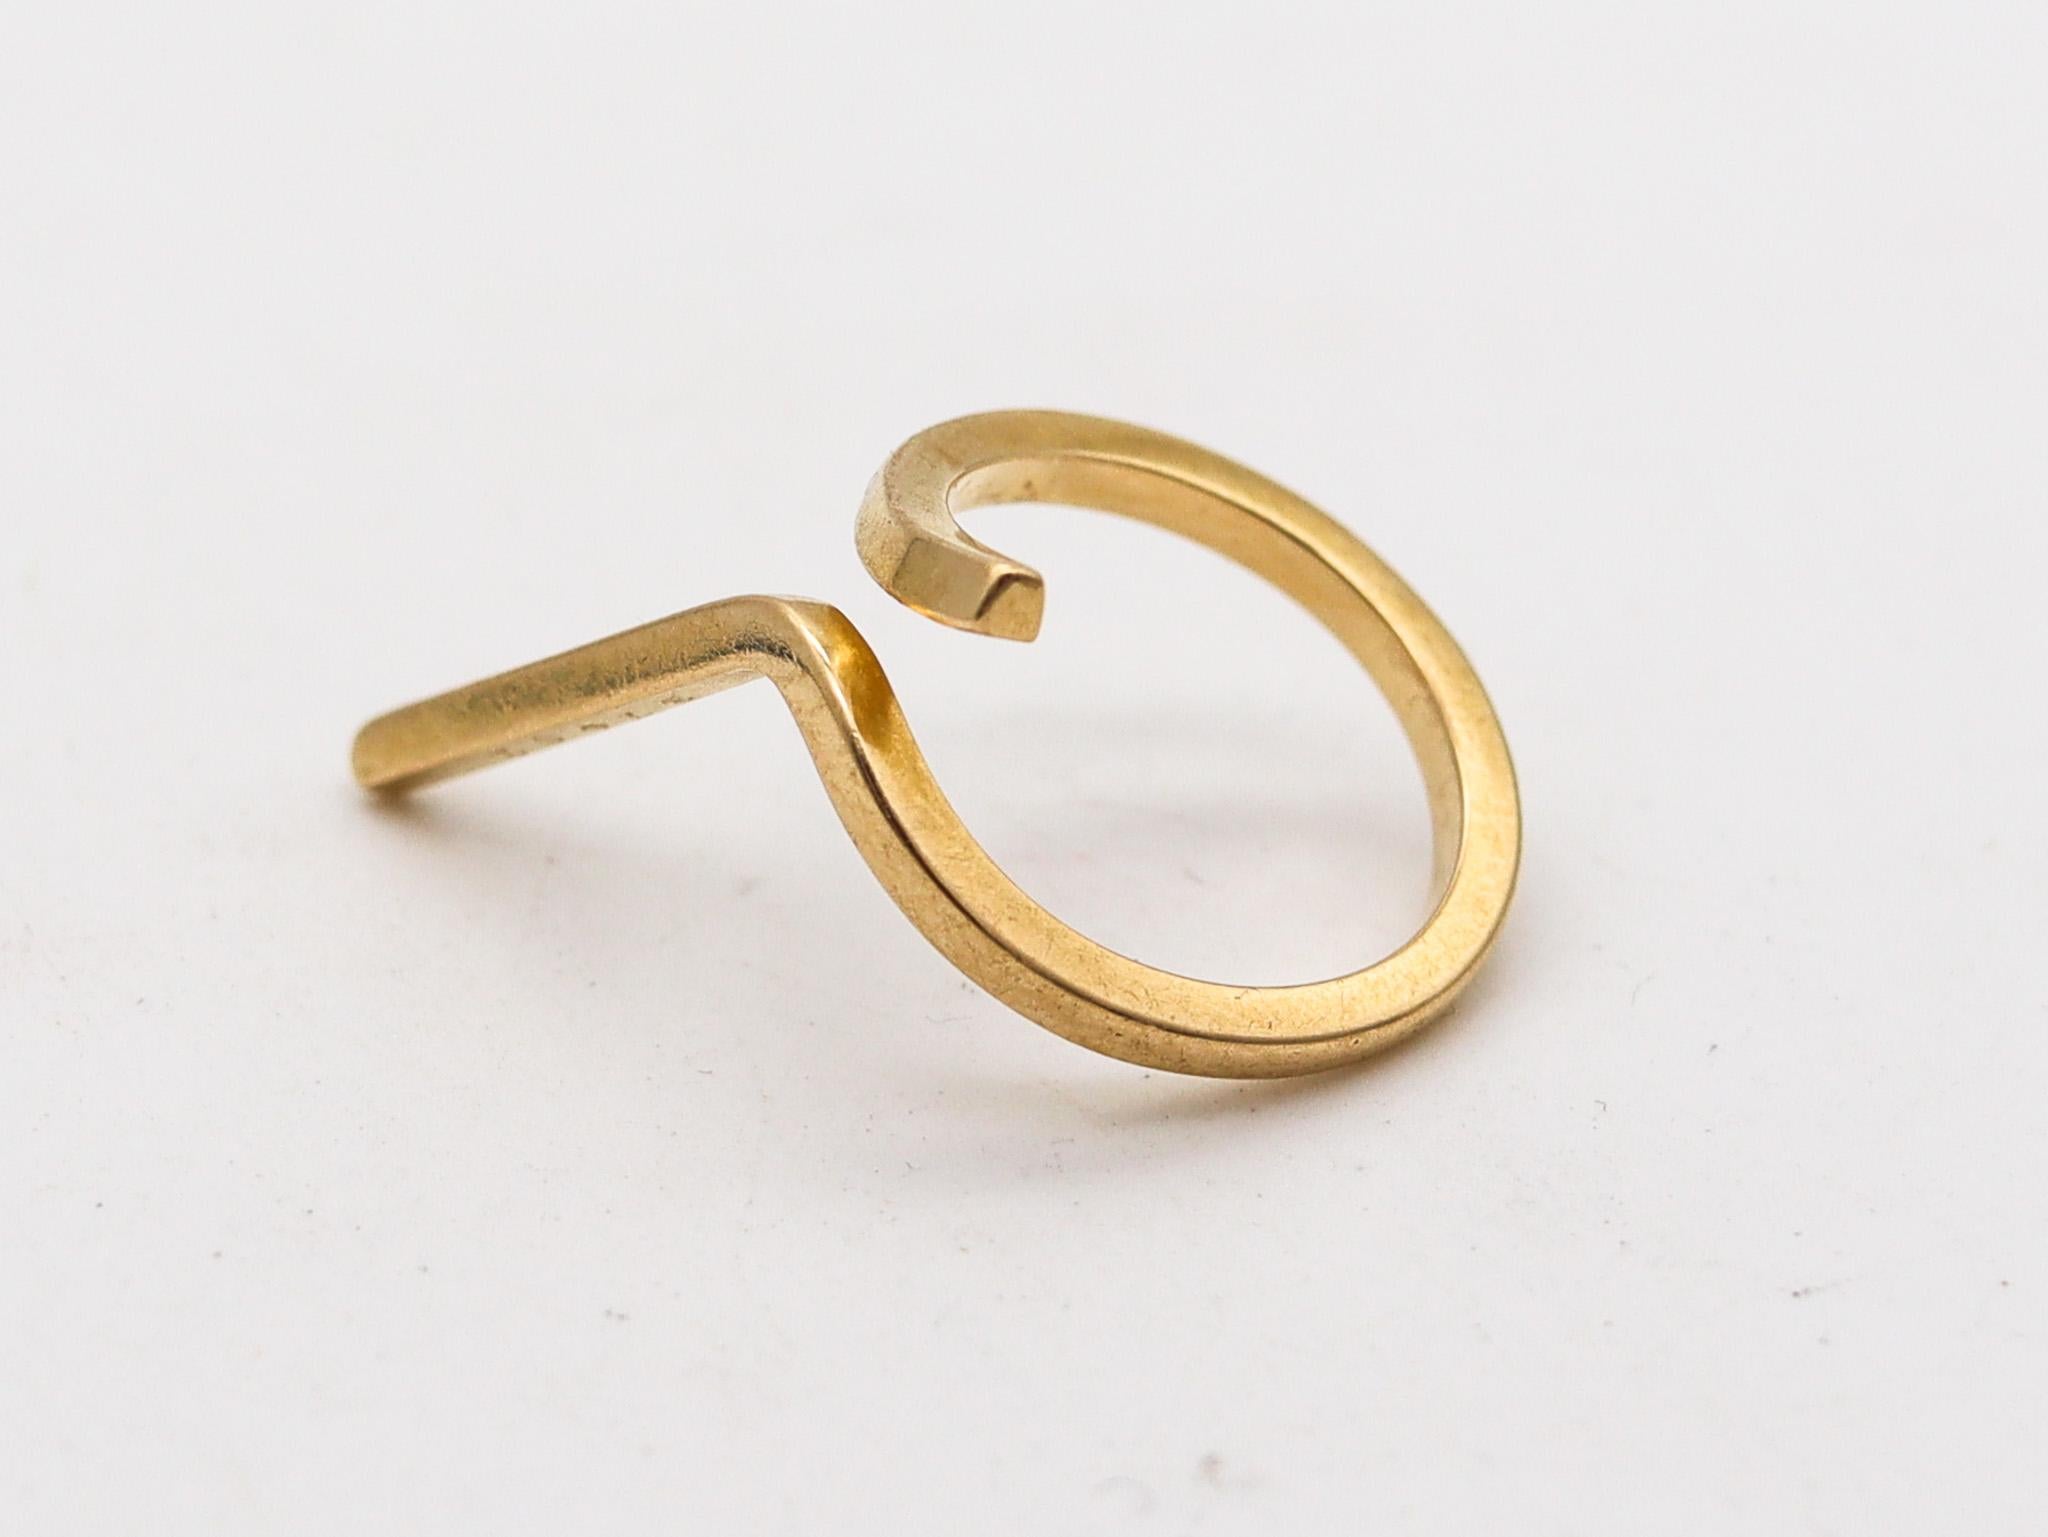 Geometrischer Ring, entworfen von Jean Dinh Van für Cartier.

Ein wunderschönes und sehr anspruchsvolles Design, das der Künstler und Schmuckdesigner Jean Dinh Van in den 1970er Jahren für das Pariser Schmuckhaus Cartier entwarf. Dieser seltene und